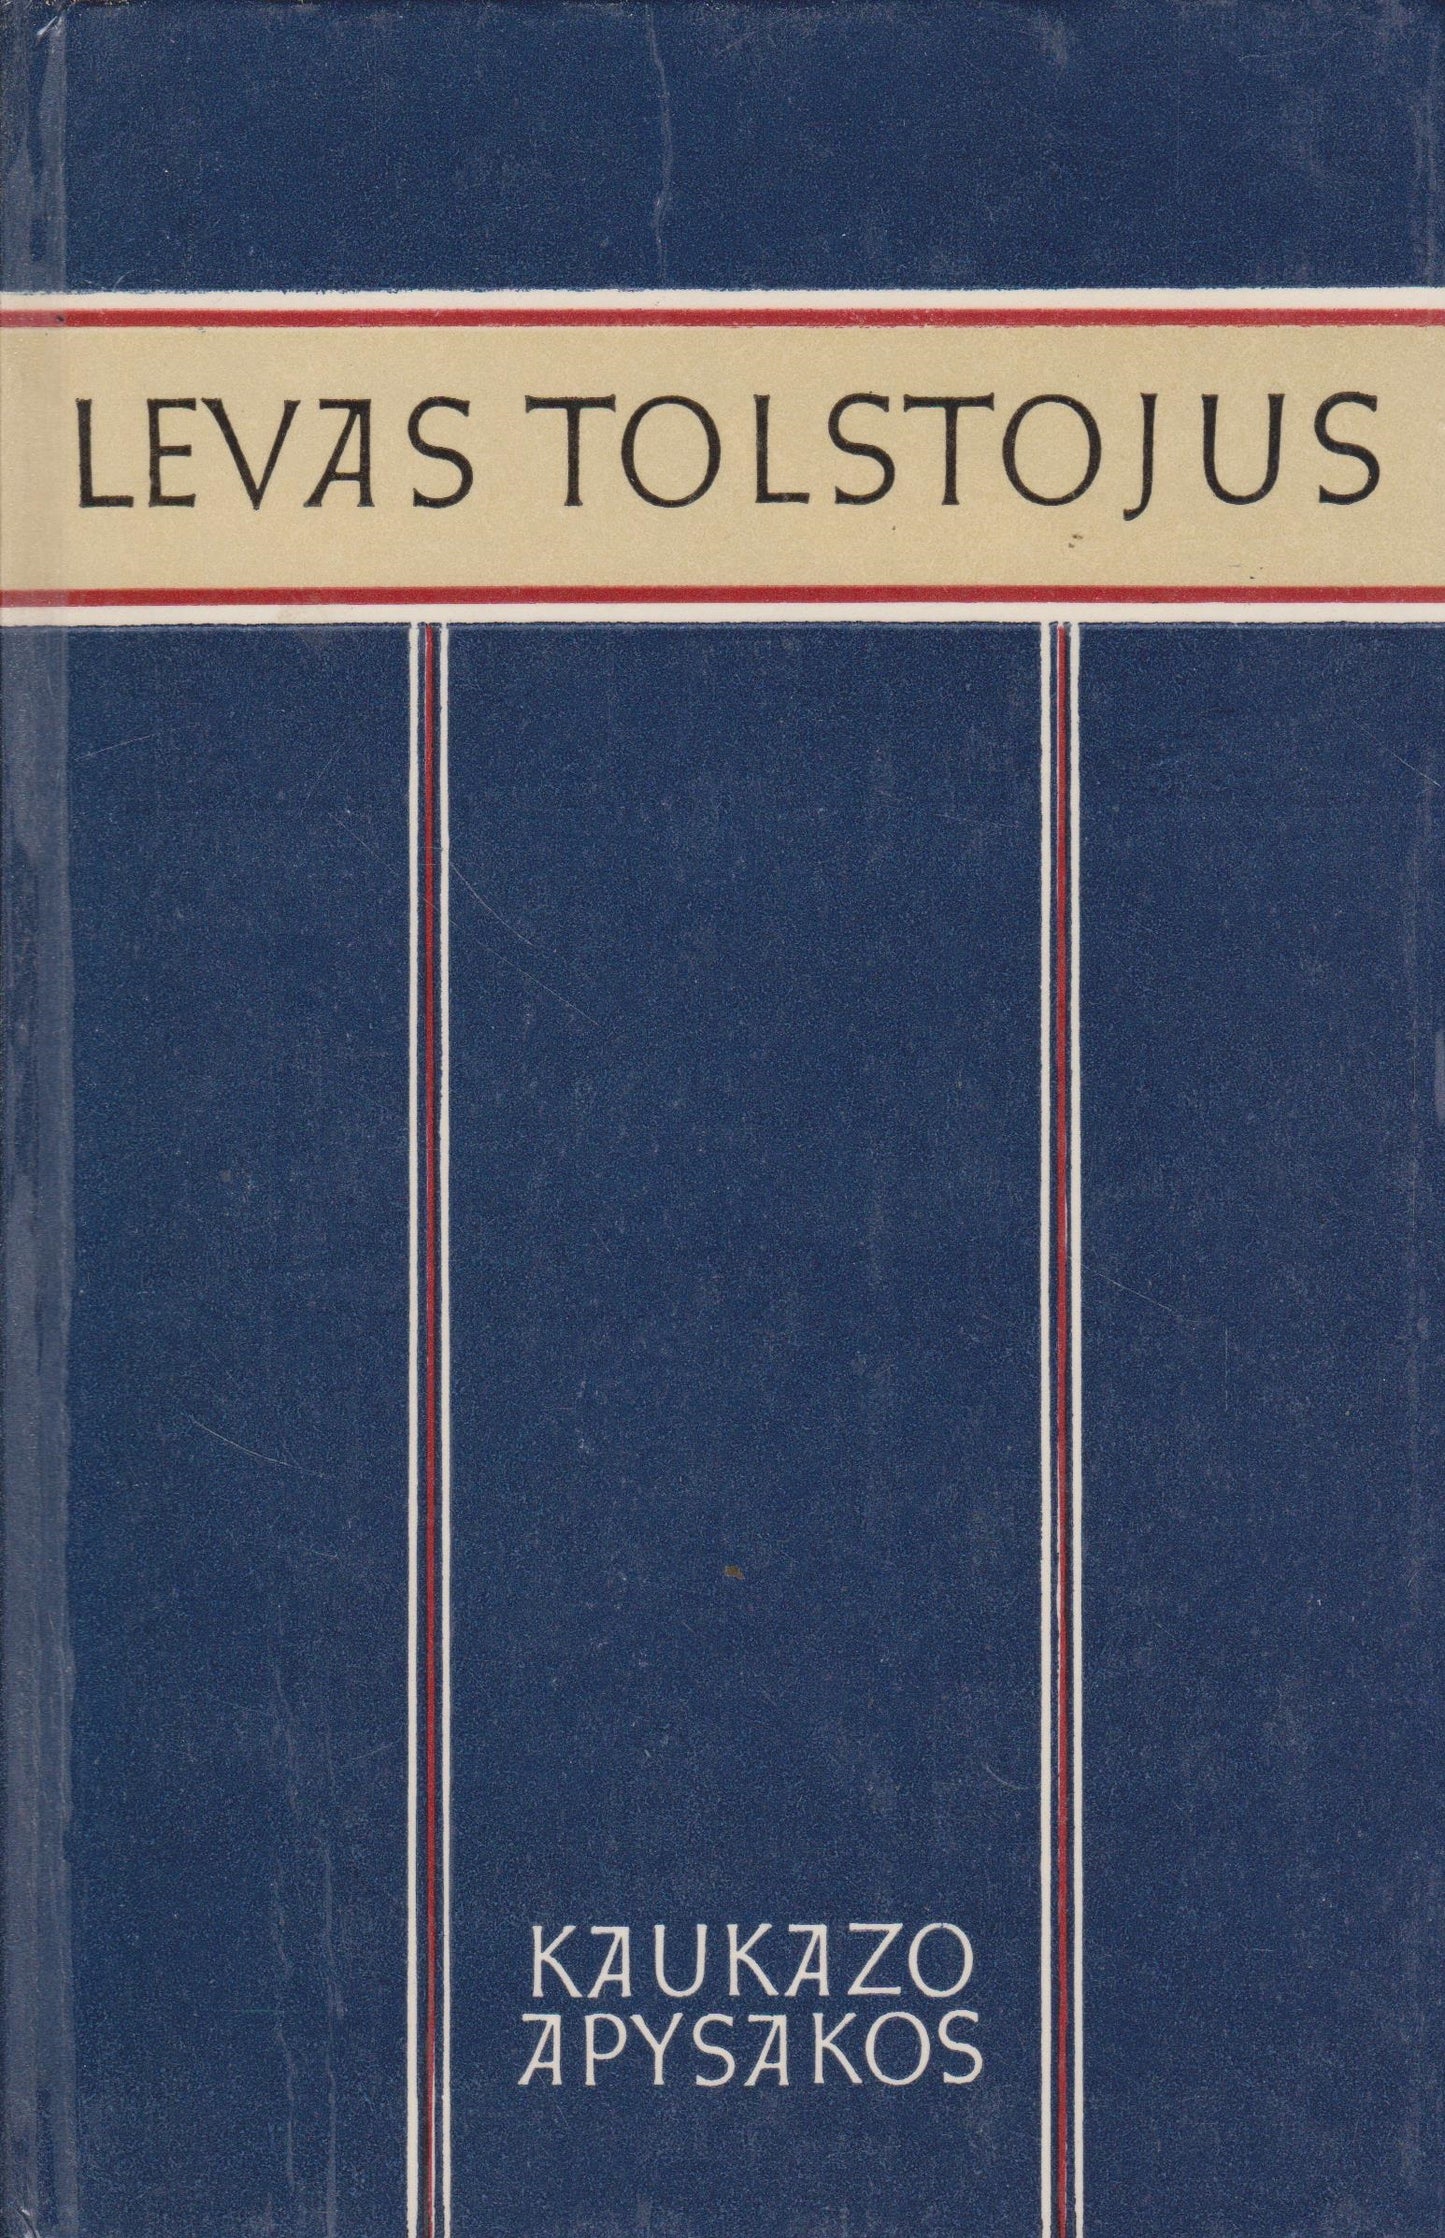 L. Tolstojus - Kaukazo apysakos